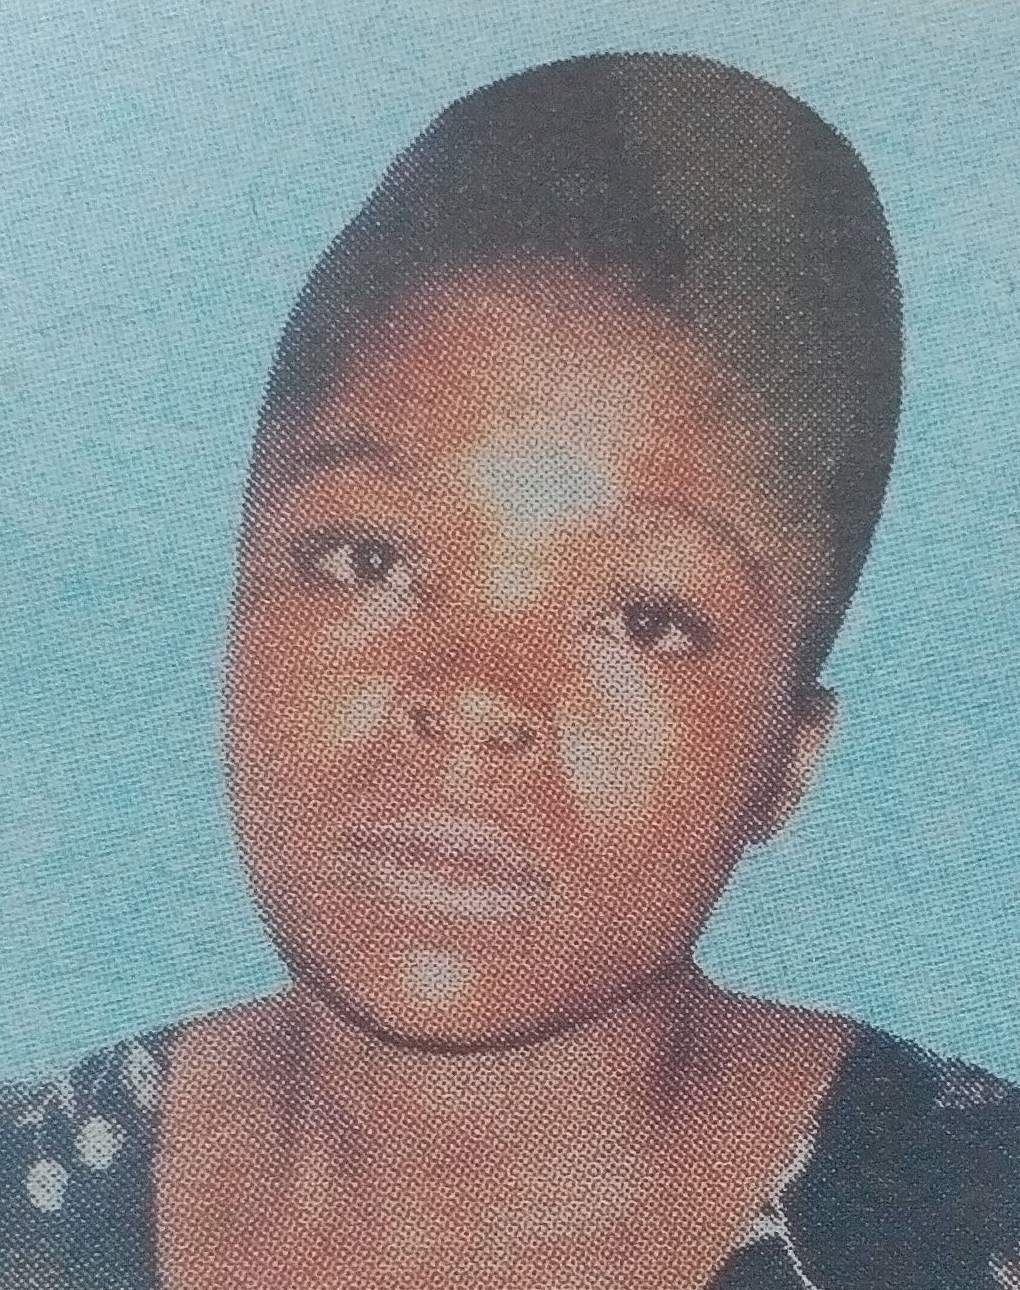 Obituary Image of Milka Kemunto Onkundi